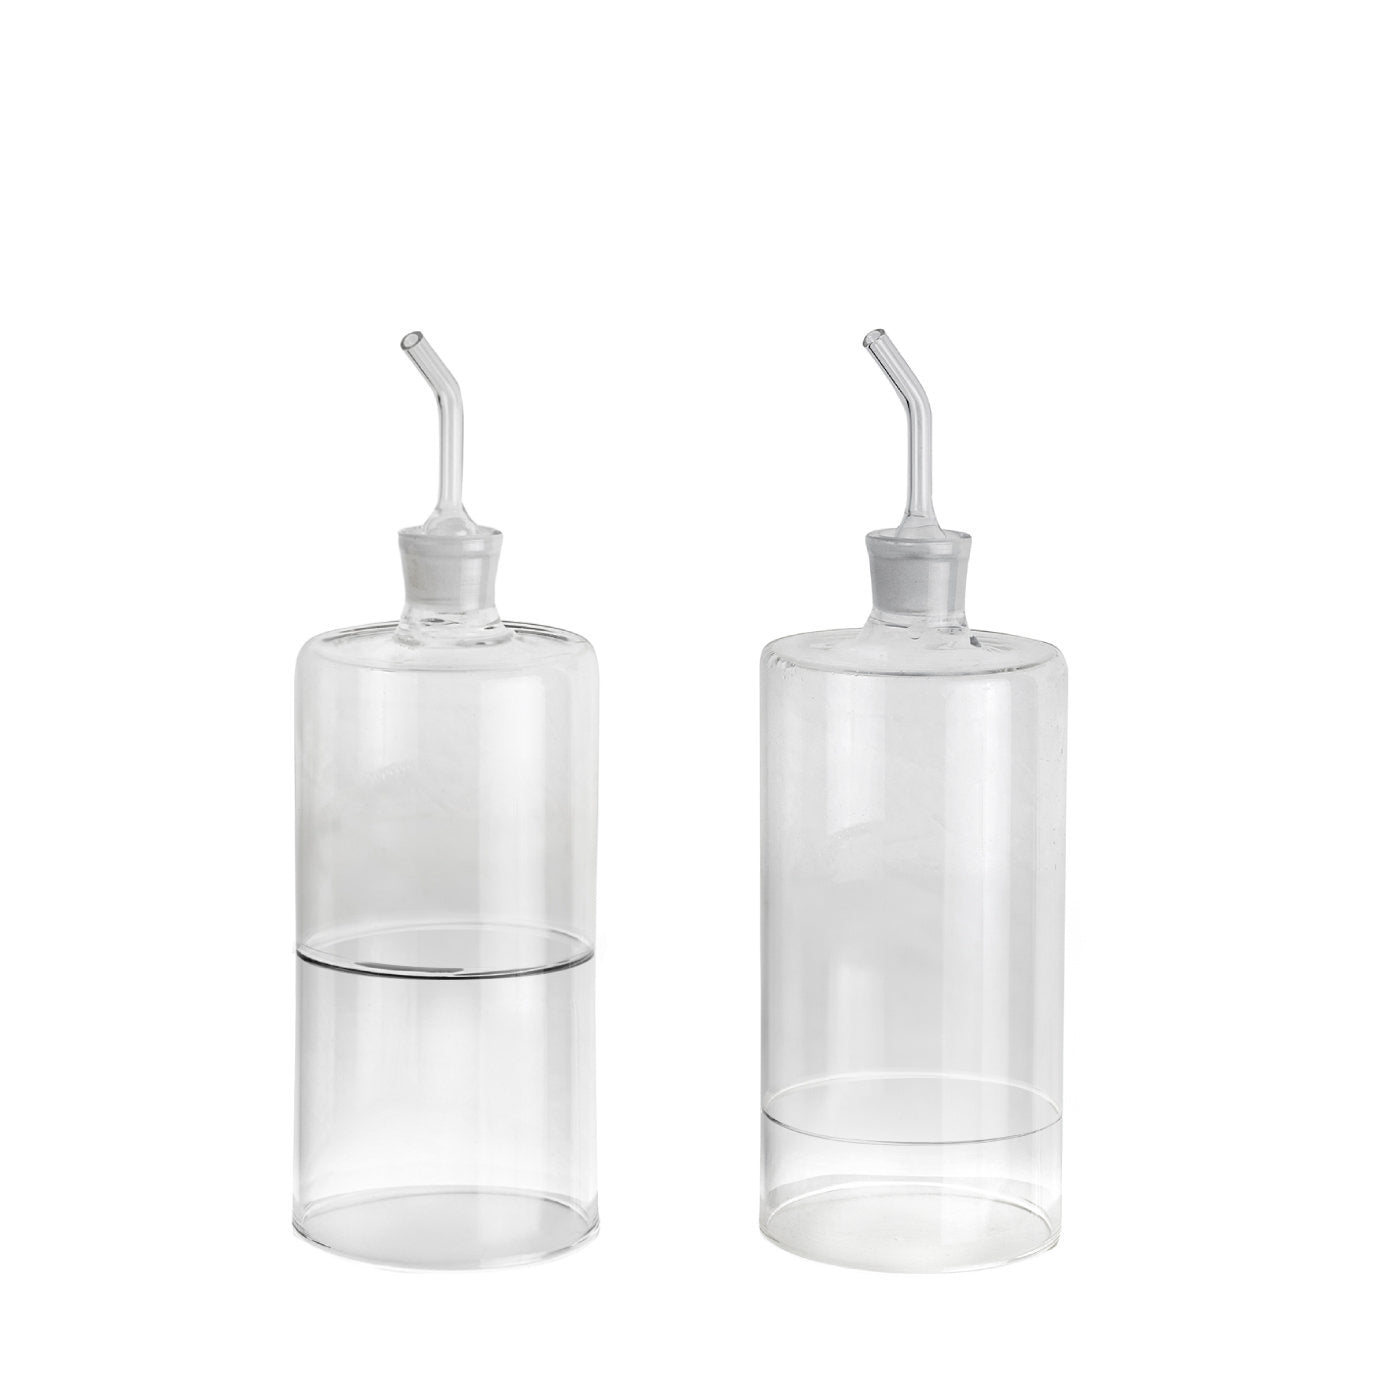 Stile Set of Oil and Vinegar Glass Bottles - Main view